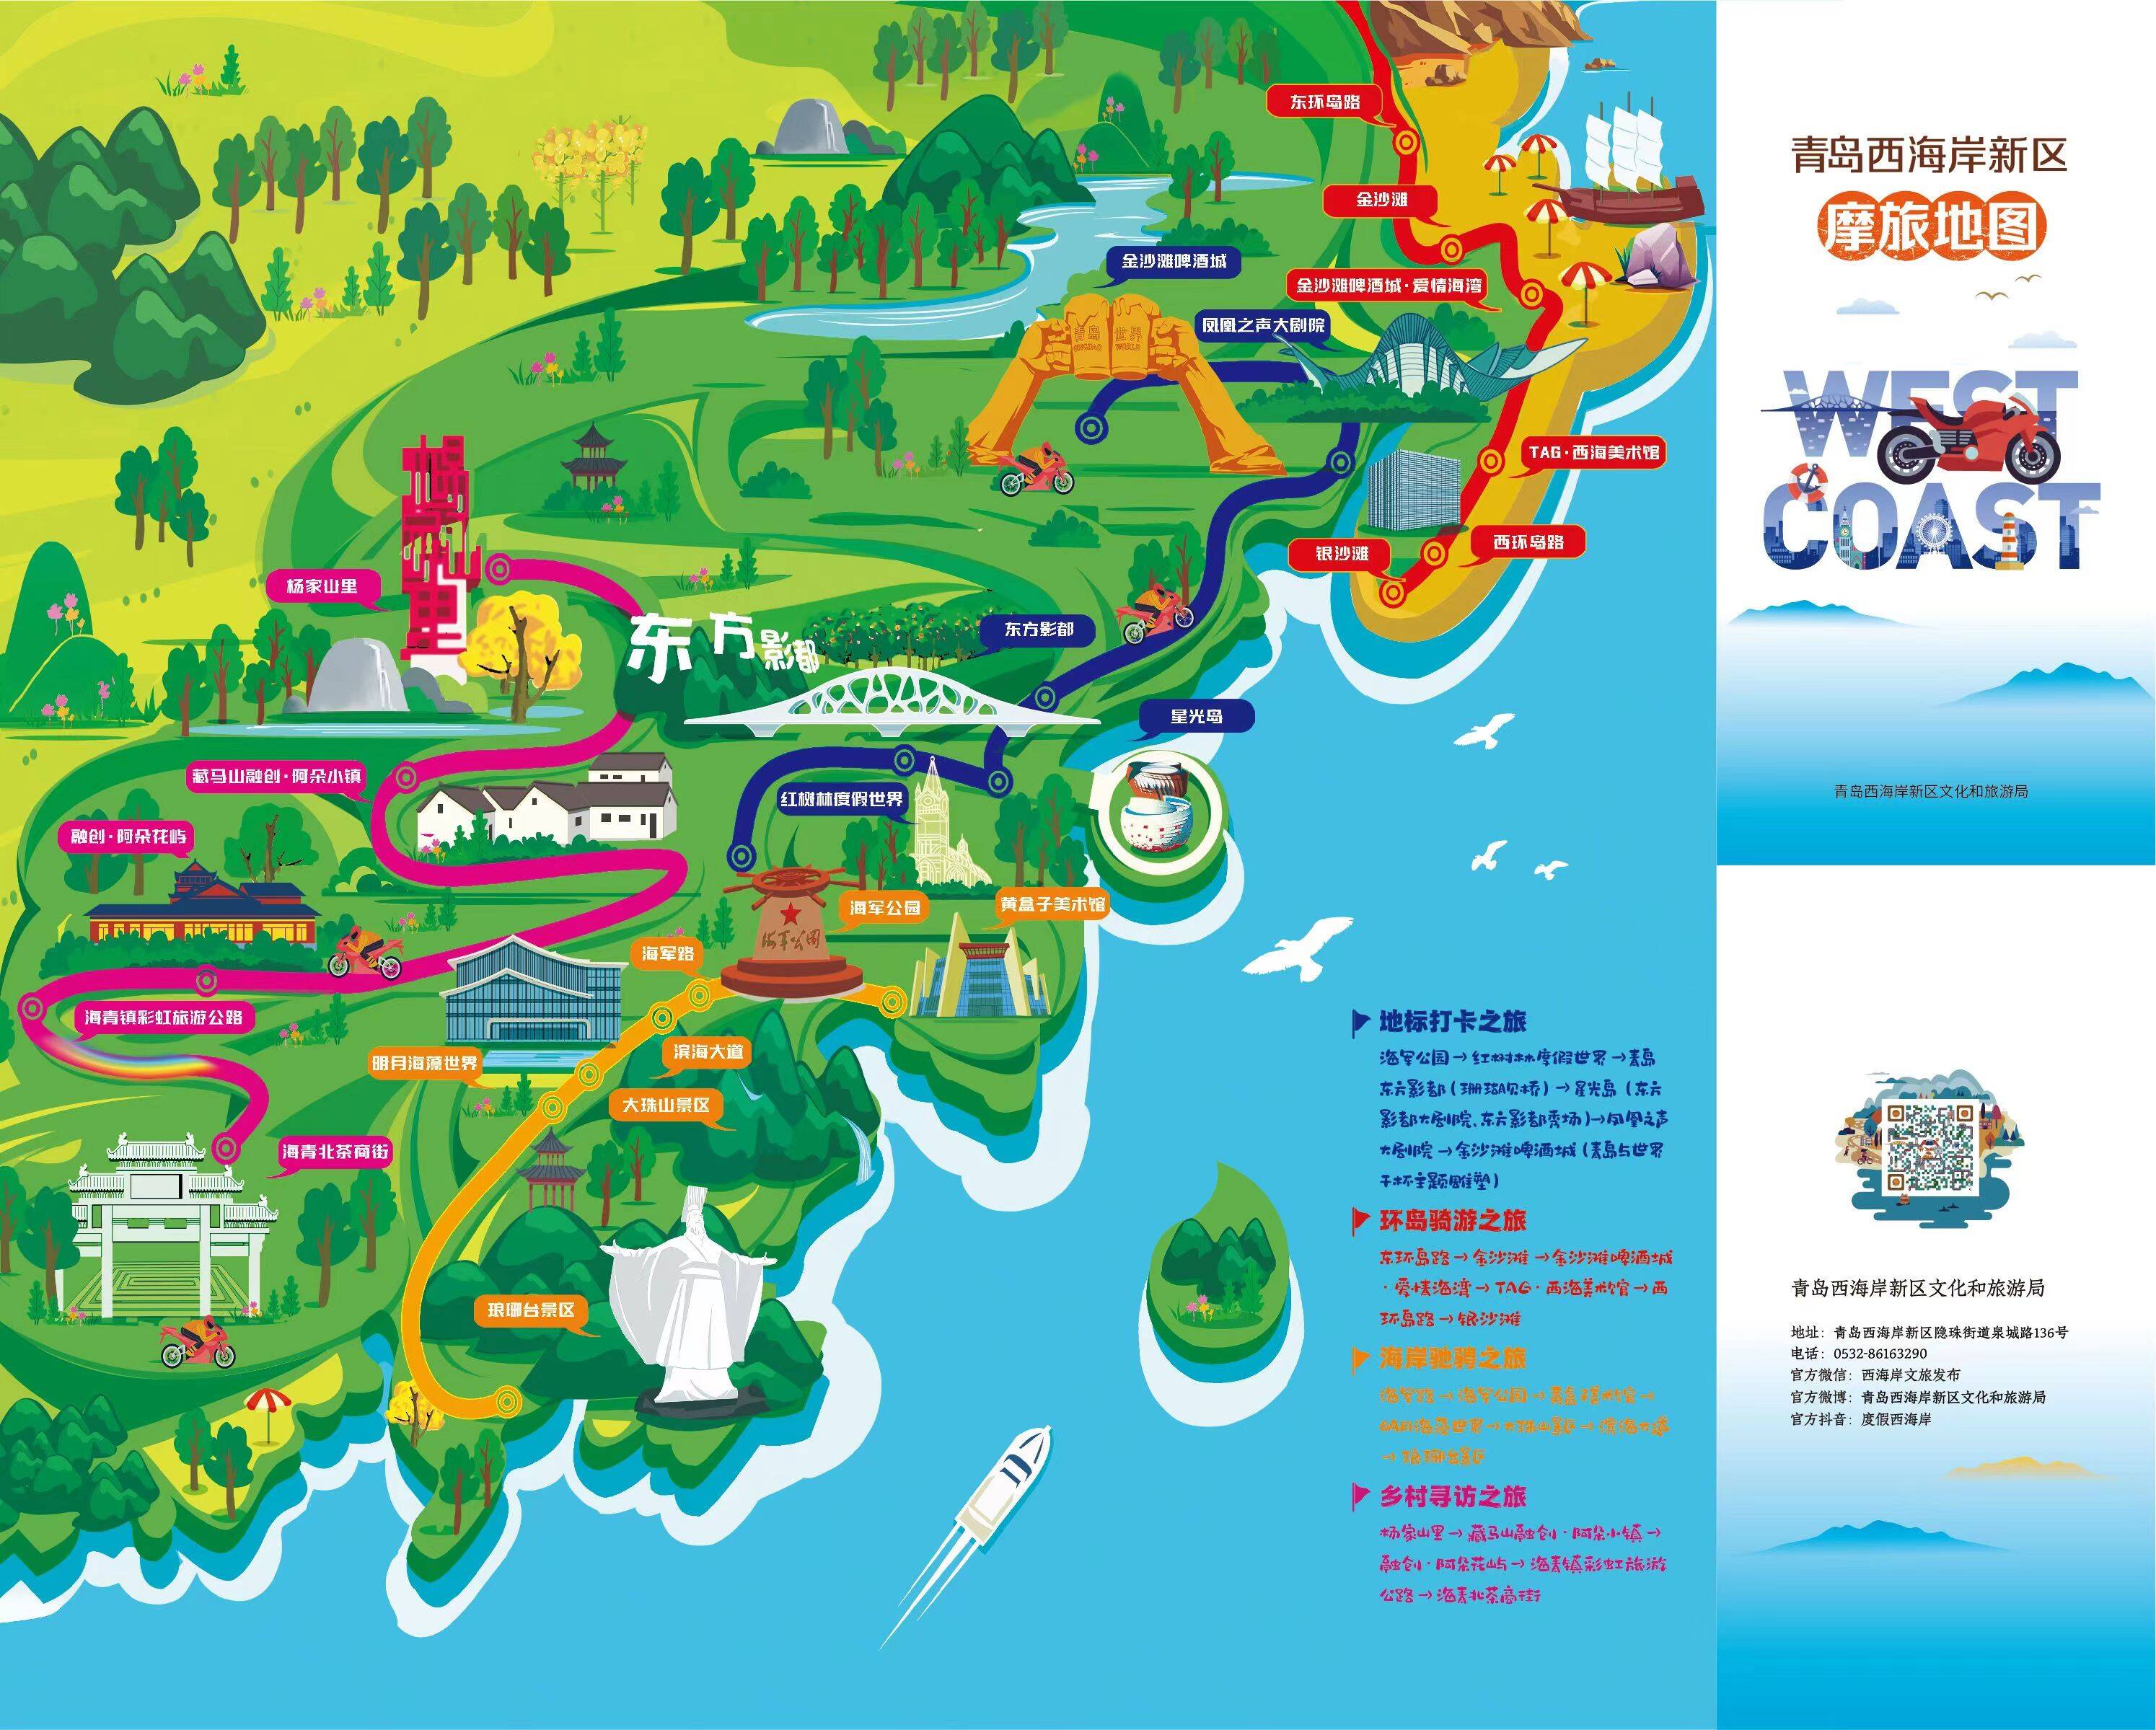 骑行山海间青岛西海岸新区摩旅大会在青岛红树林度假世界举行